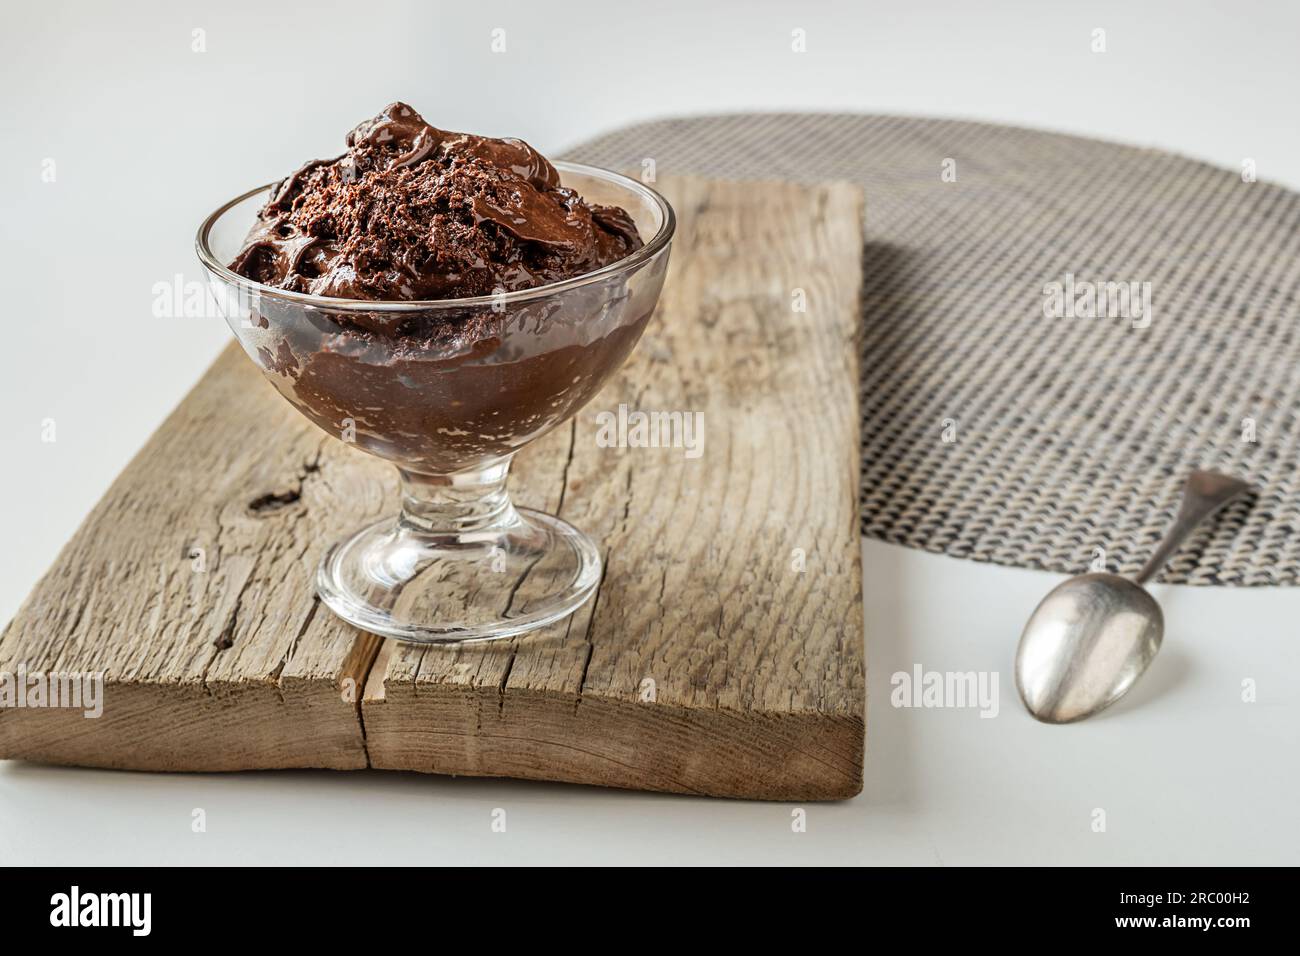 Schokoladenmousse: Traditionelles französisches Dessert in einer transparenten Schüssel auf einem weißen Tisch Stockfoto